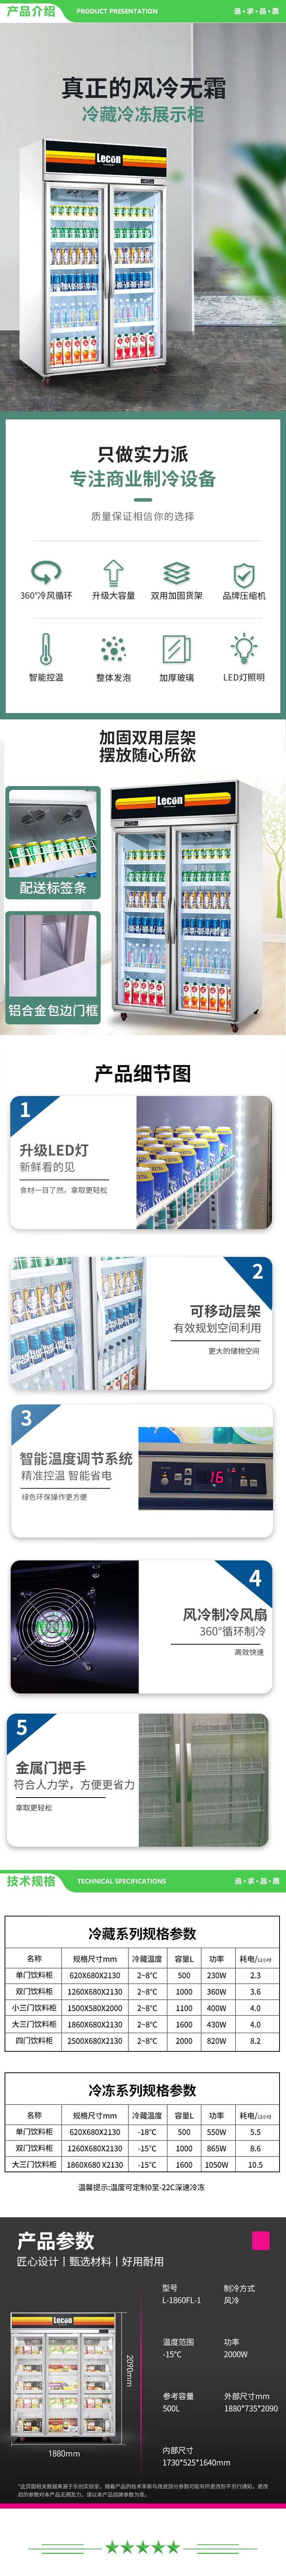 乐创 lecon L-1860FL-1 超市冷冻展示柜商用立式冻品速冻饺子雪糕柜 2.jpg